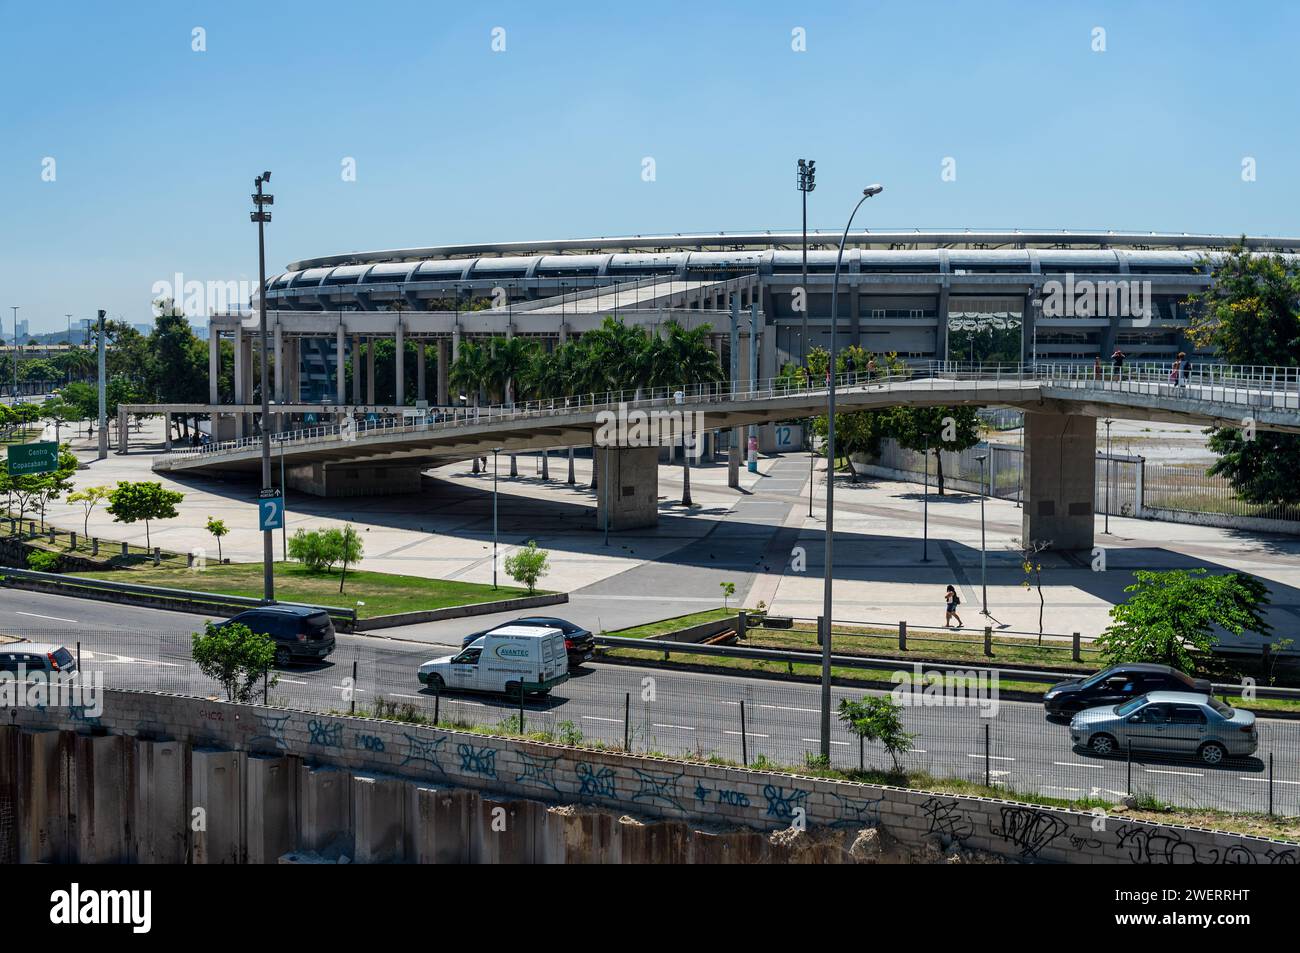 Vista parziale dello stadio Maracana visto dal ponte pedonale della stazione ferroviaria di Maracana su Rei Pele avenue, sotto il sole del mattino estivo, cielo azzurro e limpido. Foto Stock